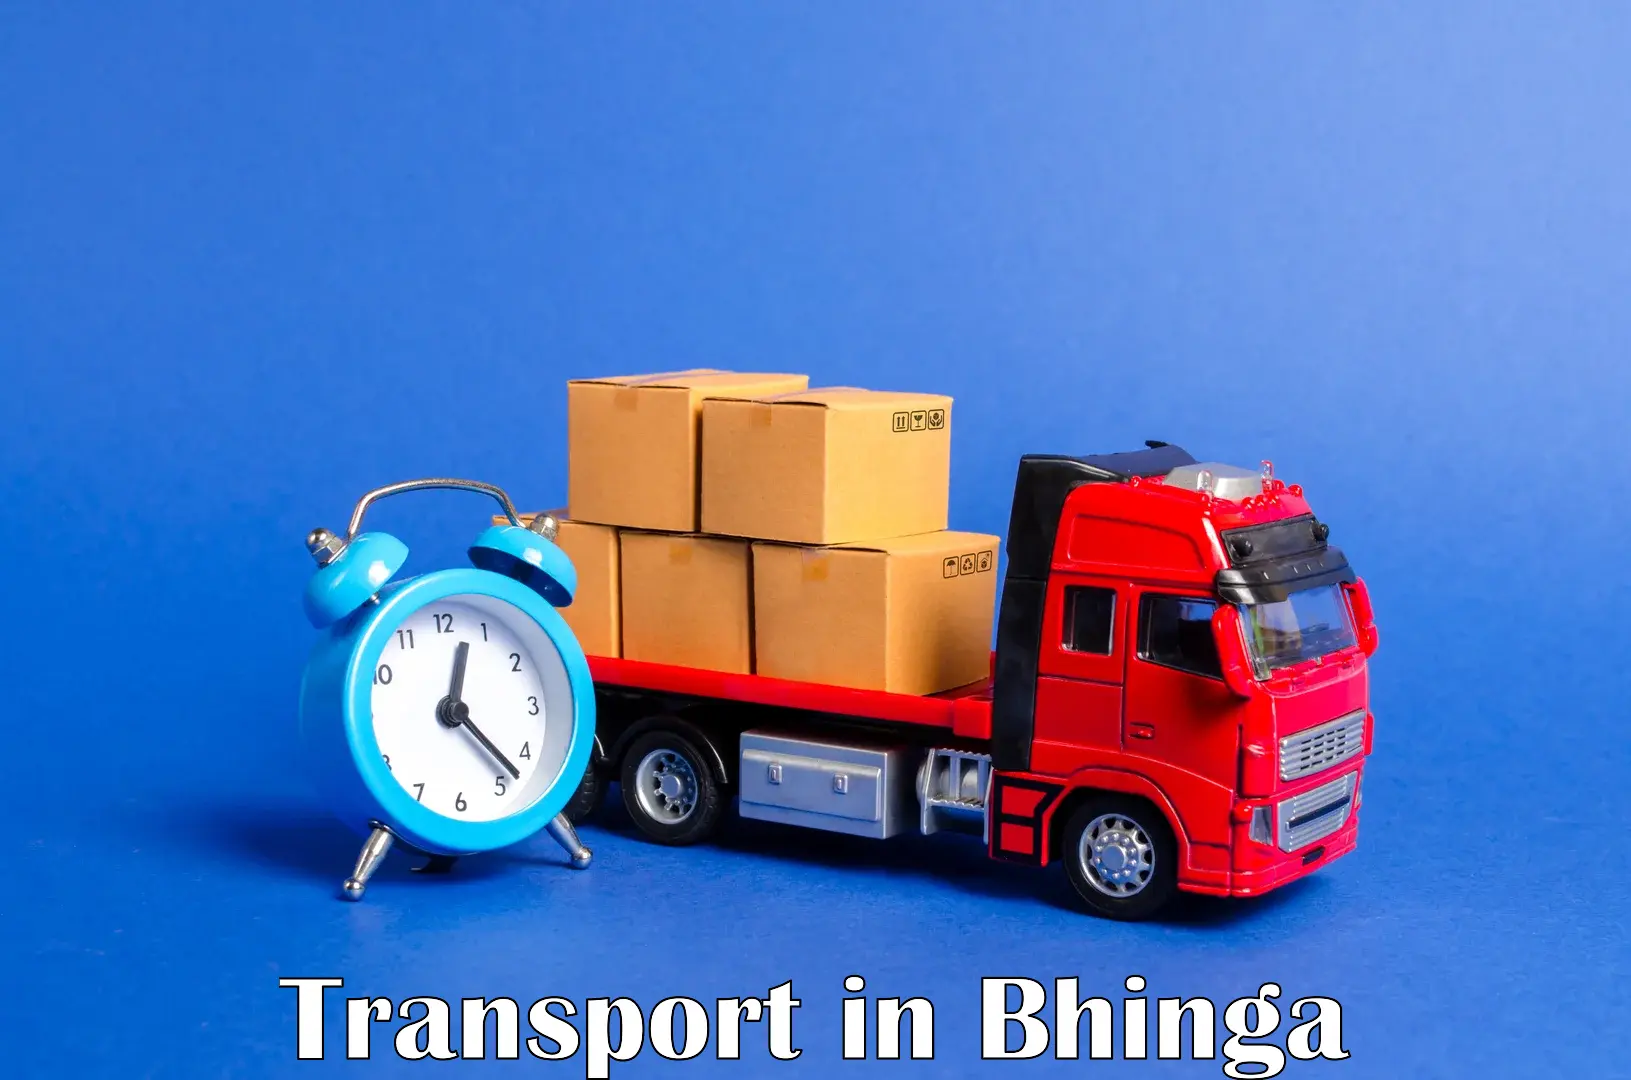 Intercity goods transport in Bhinga